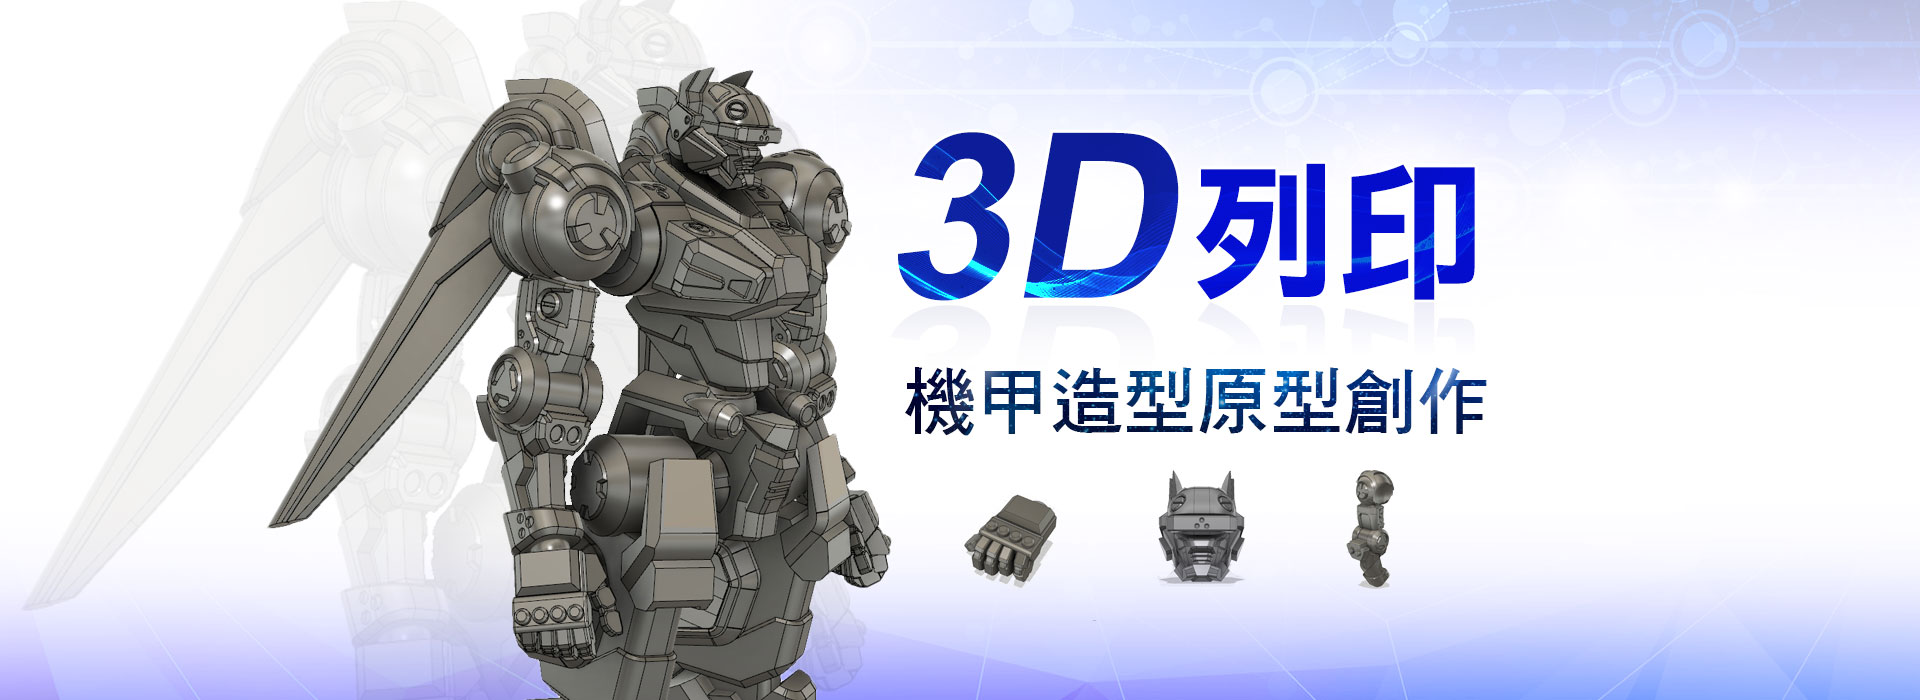 3D列印-機甲造型原型創作